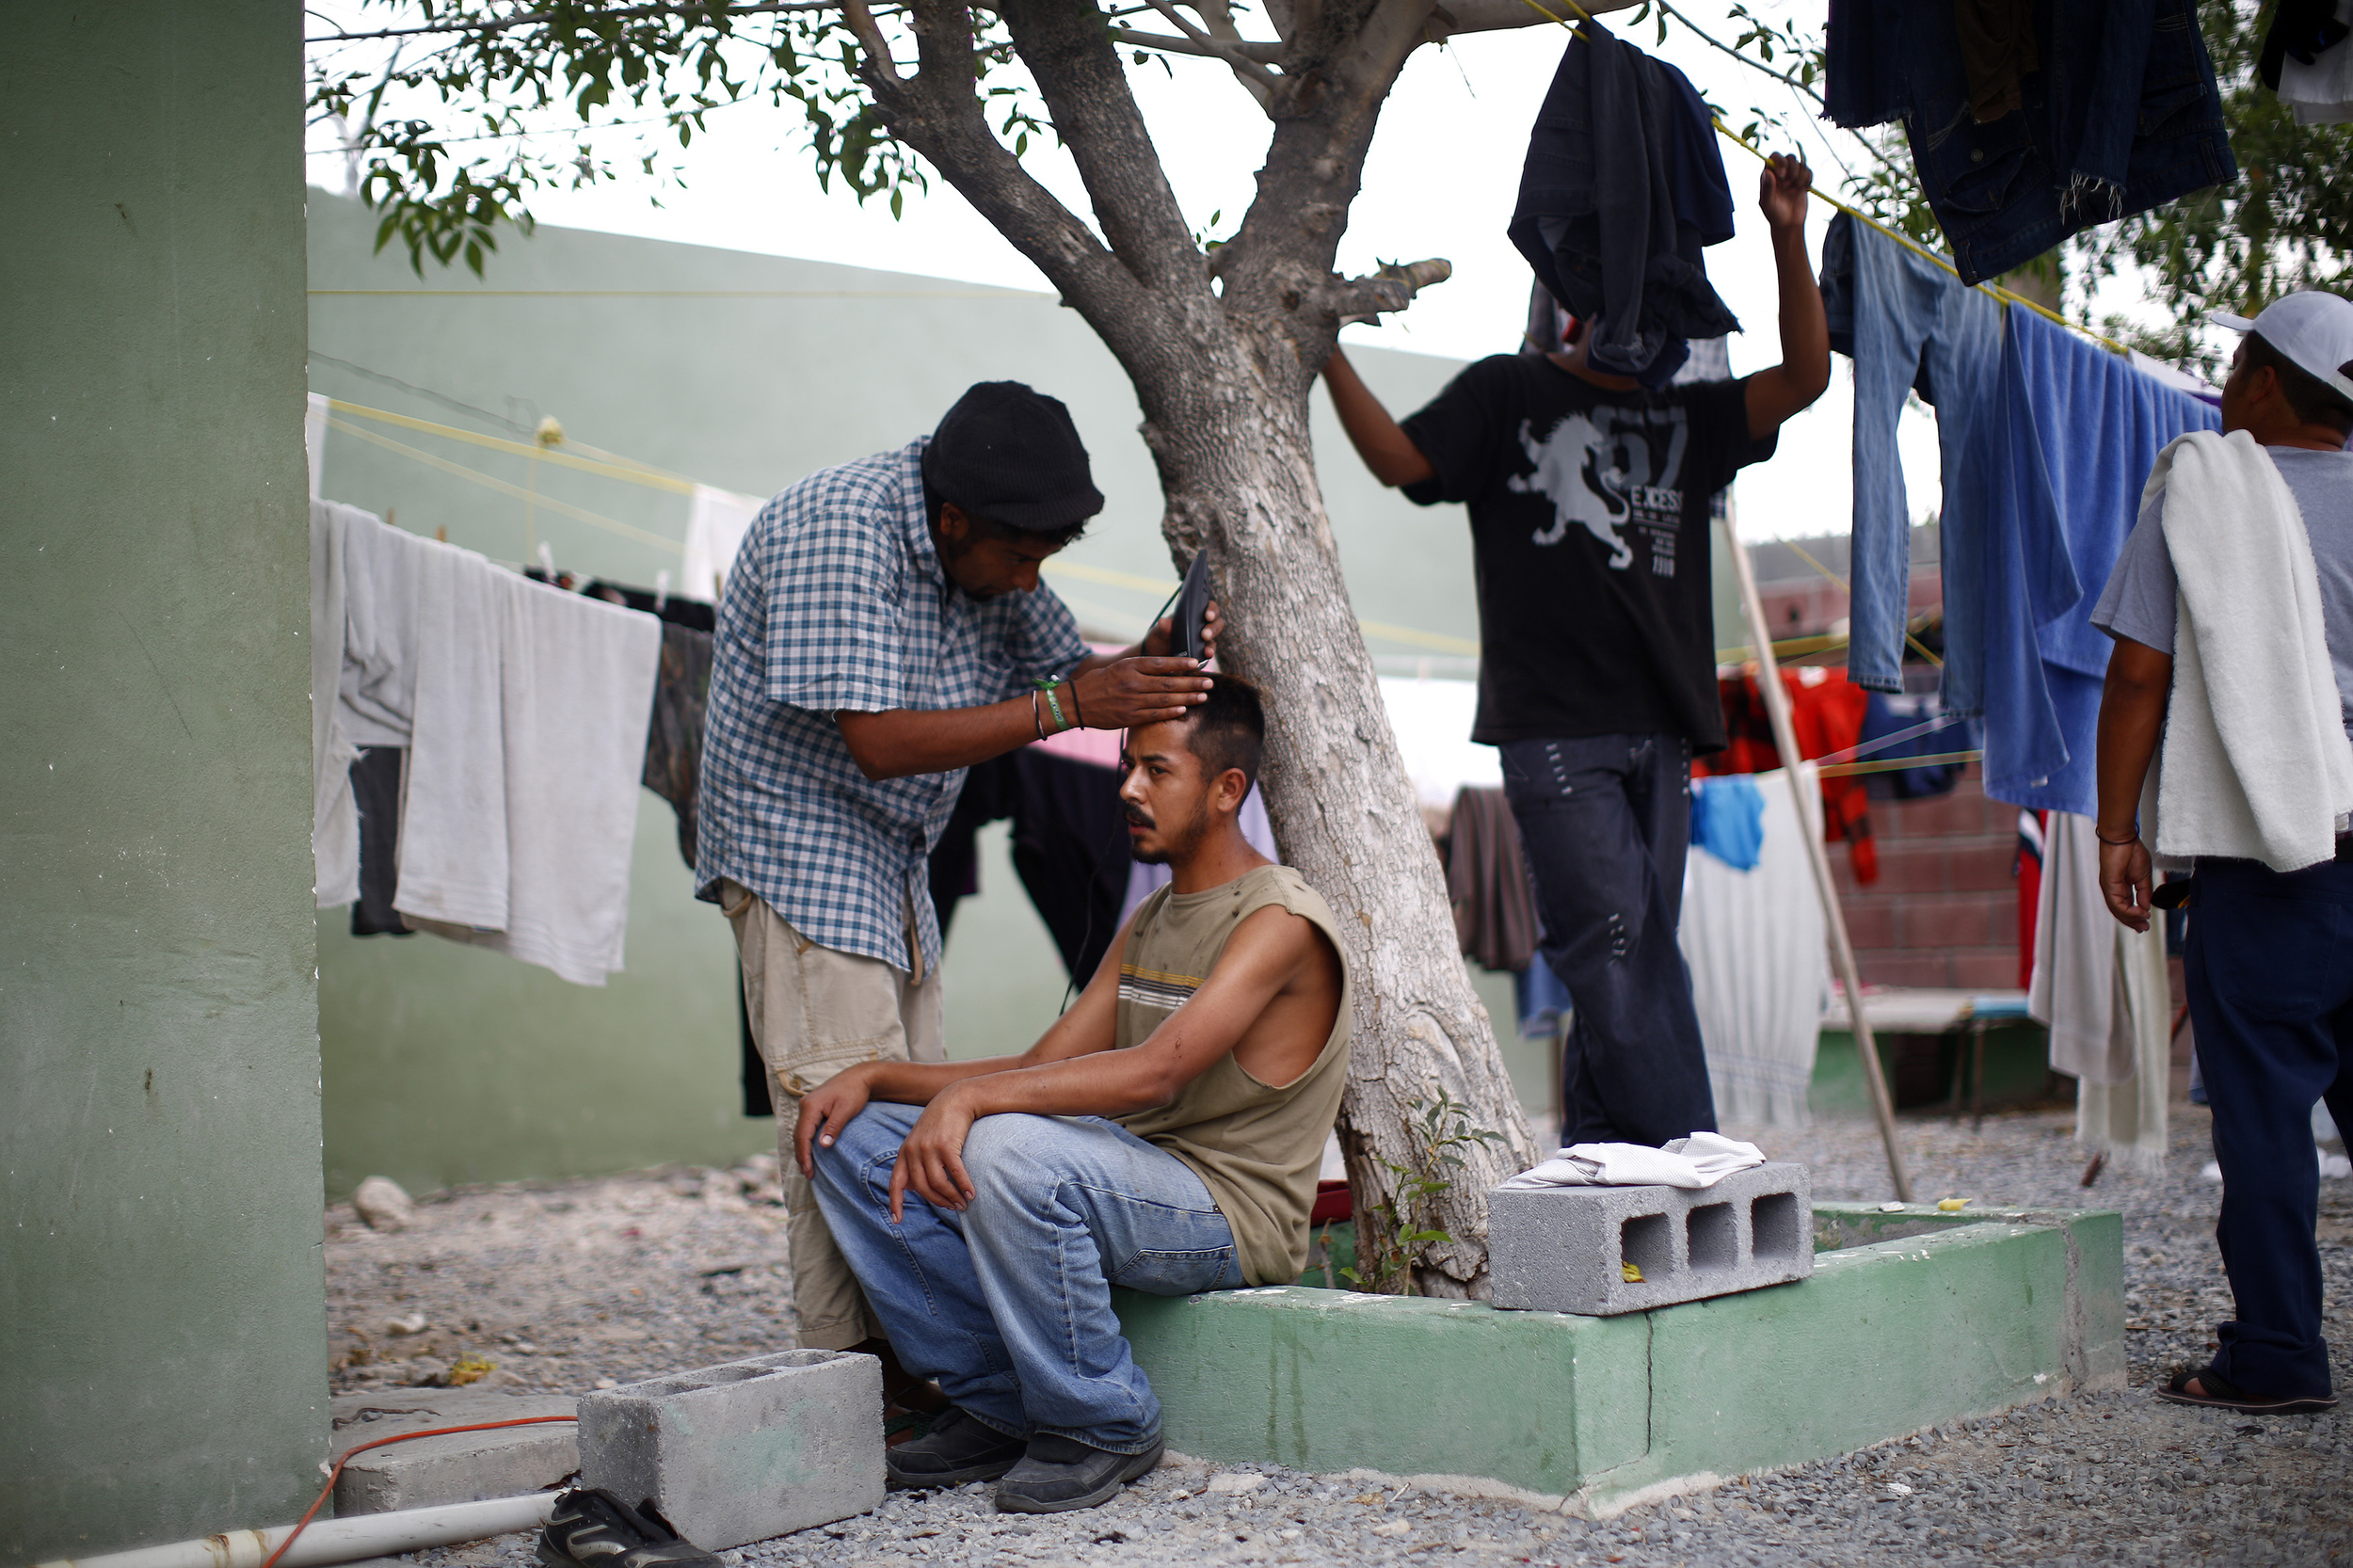   Casa del Migrante shelter. Reynosa, Mexico. 2013  